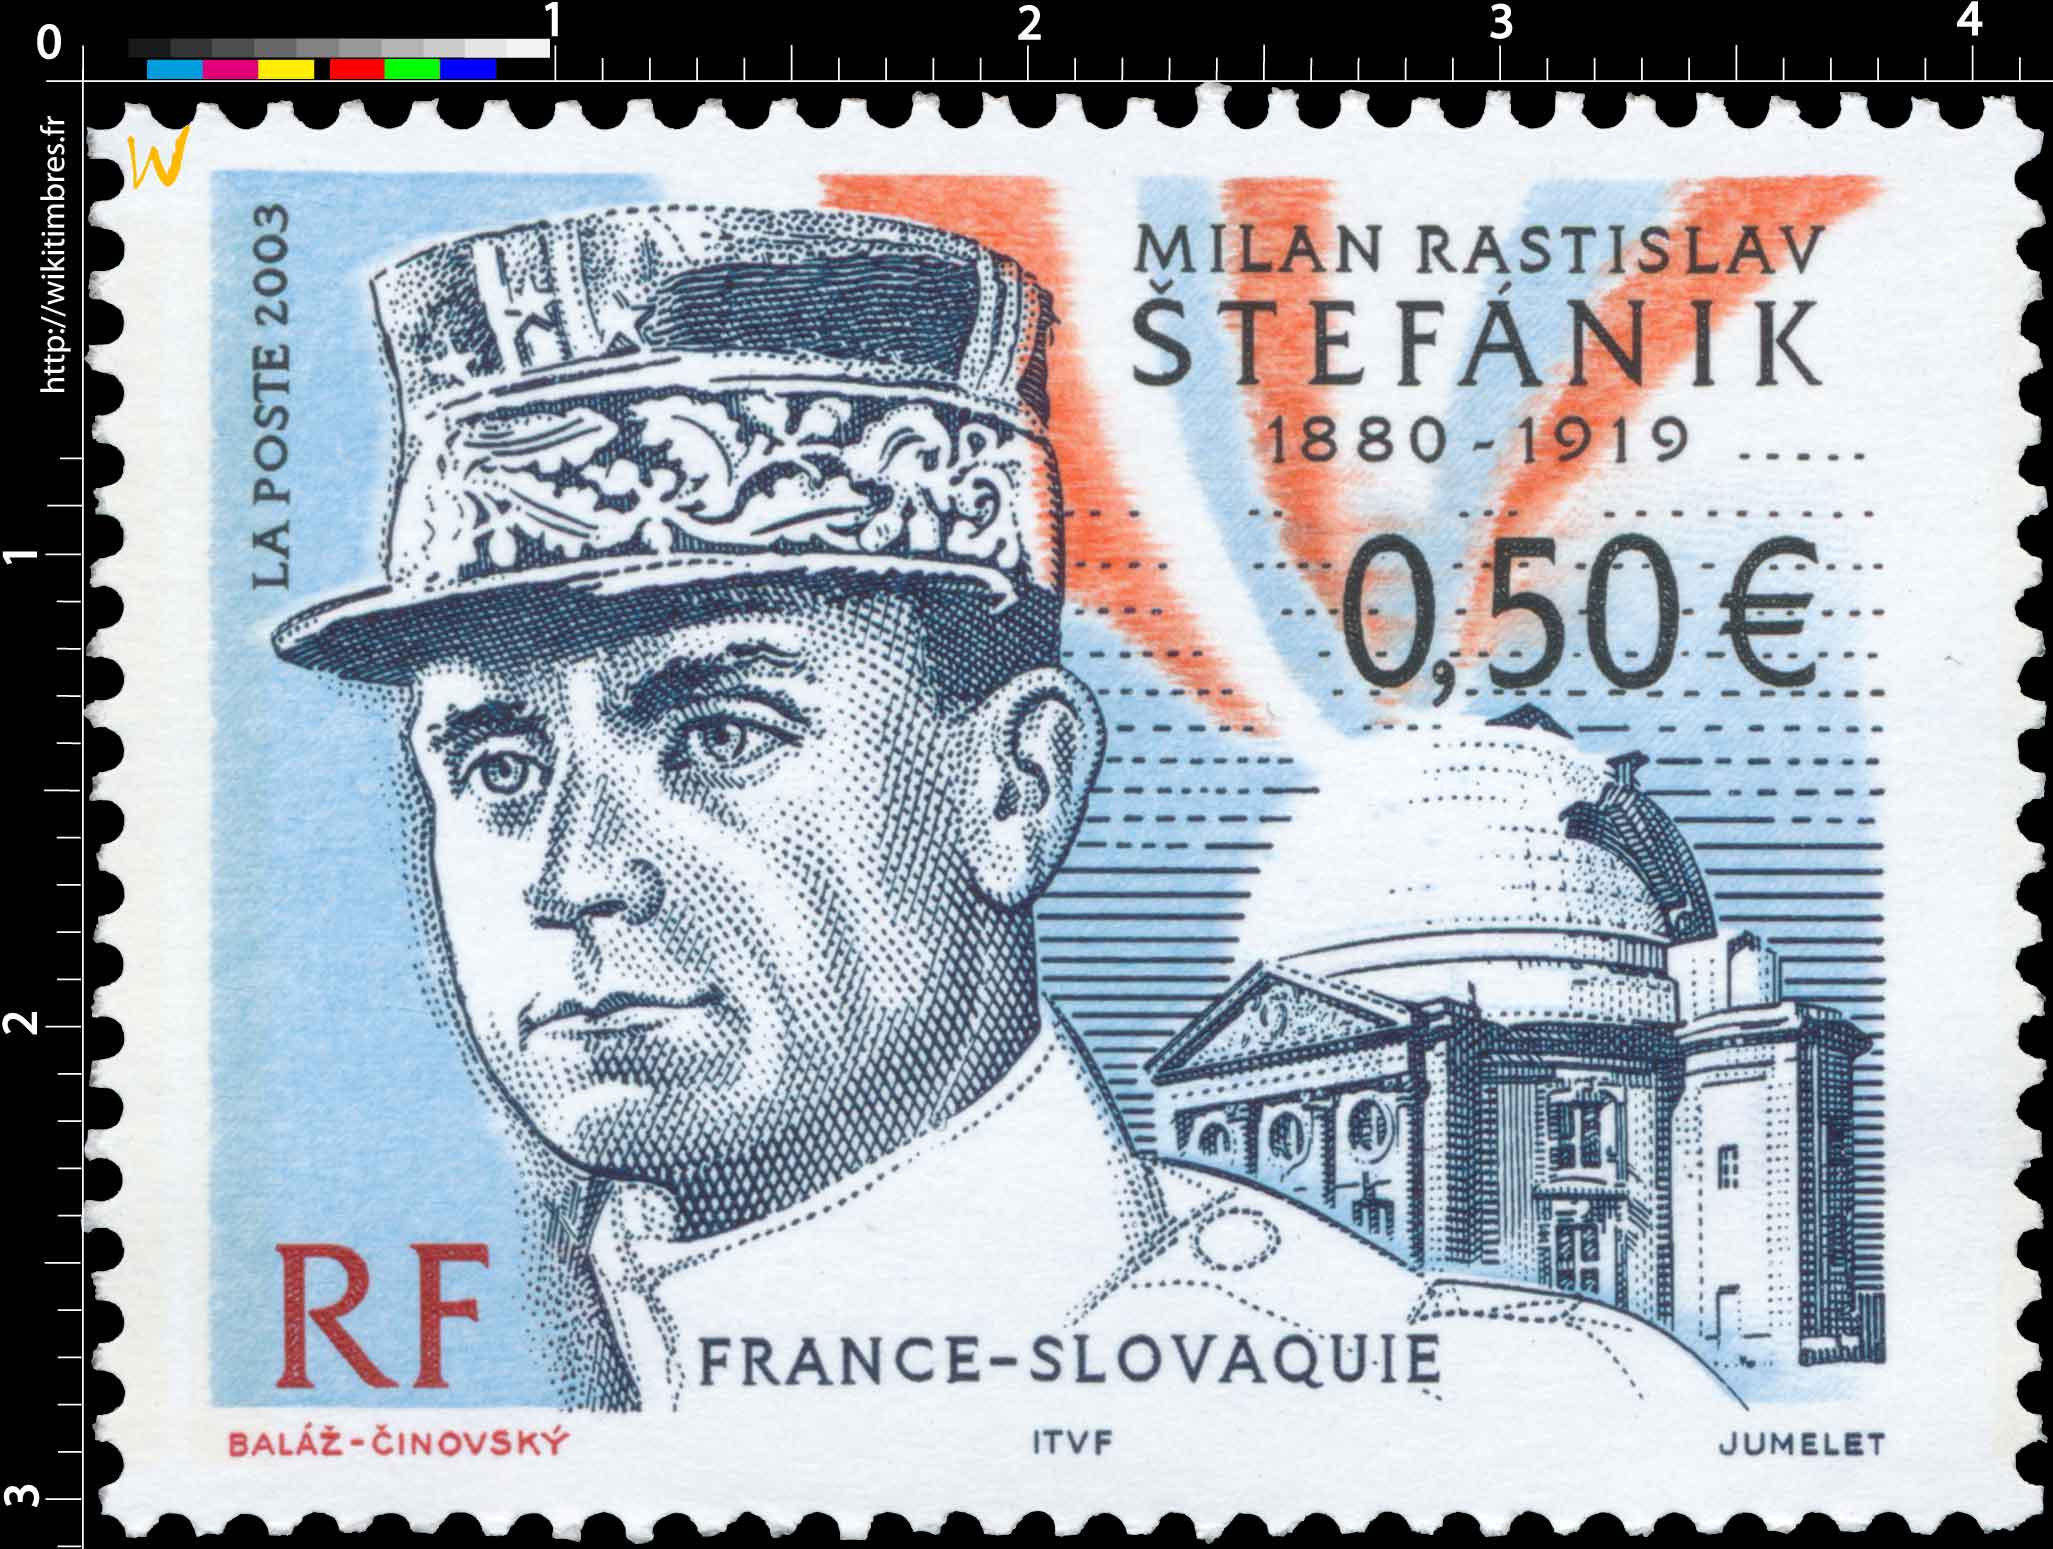 2003 MILAN RASTISLAV ŠTEFÁNIK 1880-1919 FRANCE-SLOVAQUIE